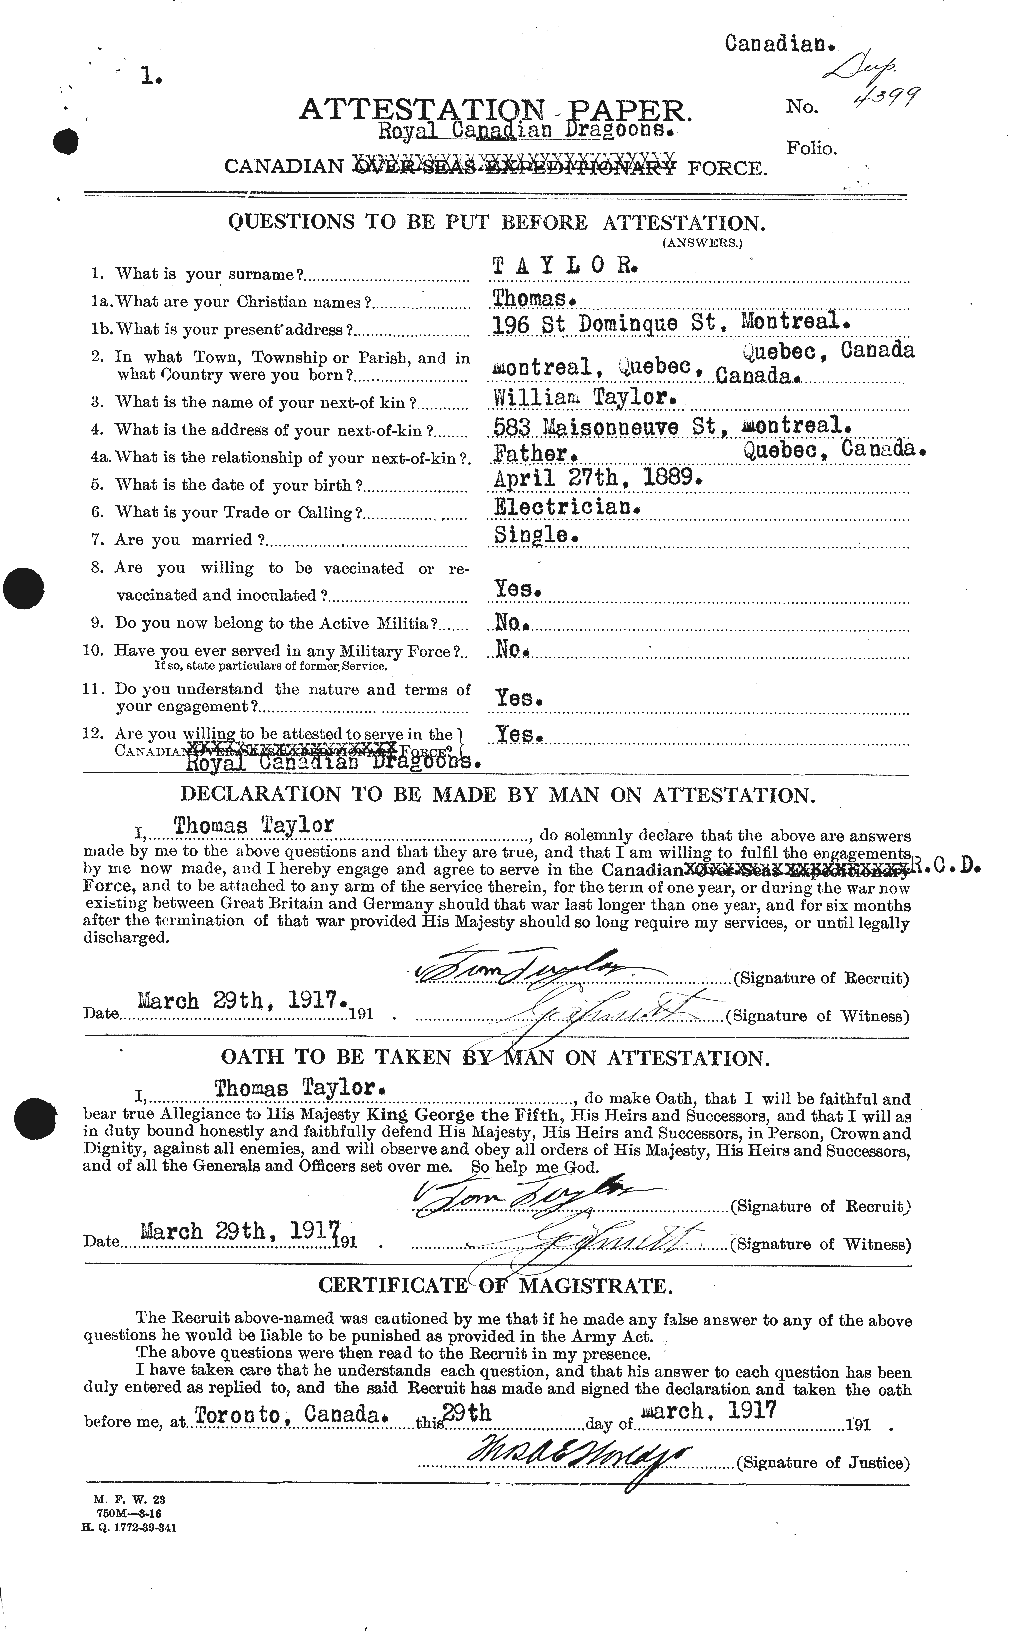 Dossiers du Personnel de la Première Guerre mondiale - CEC 627963a